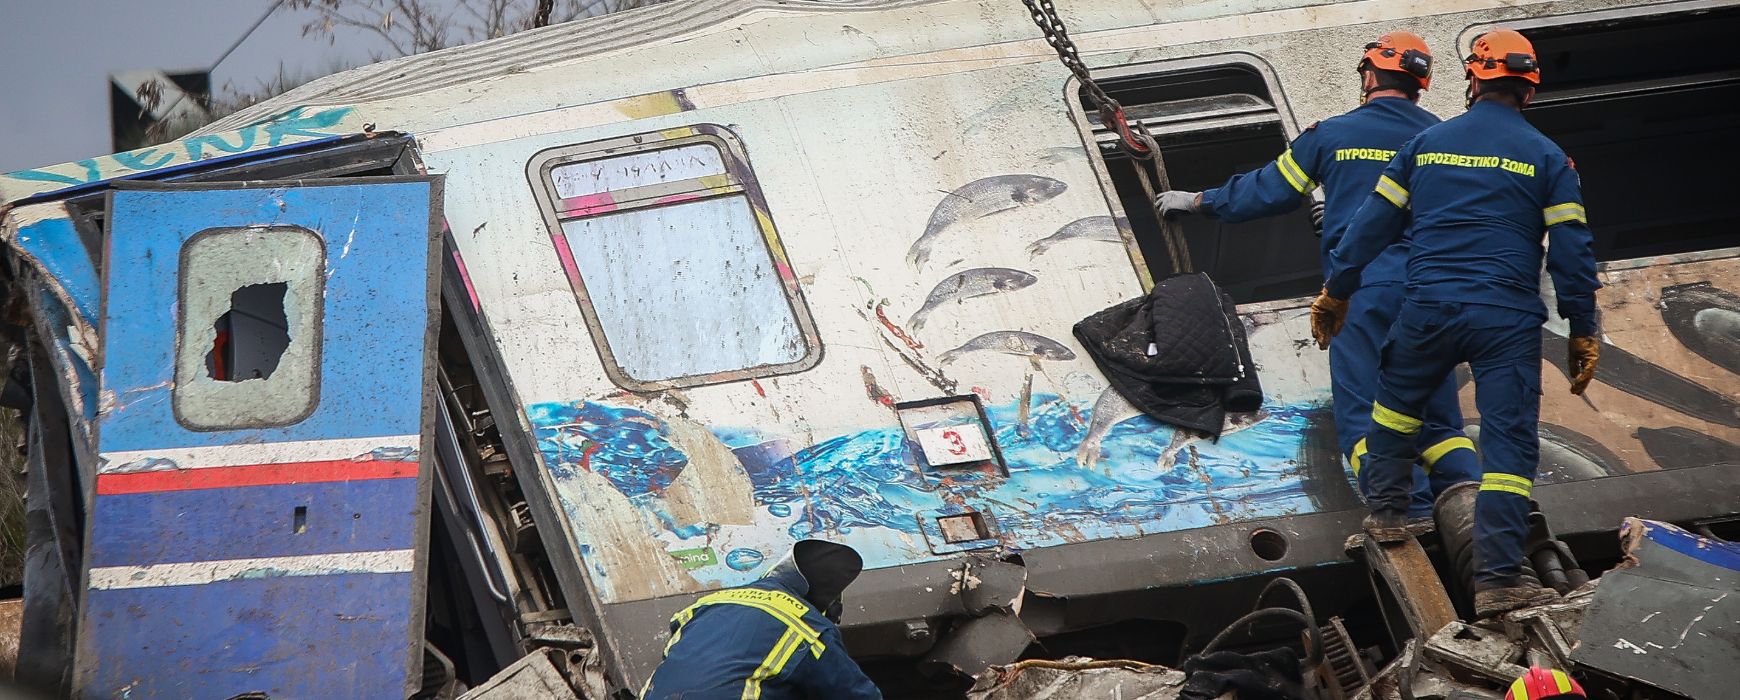 Σύγκρουση τρένων στα Τέμπη: Ο σταθμάρχης παραδέχθηκε παραλείψεις – Κατάλαβε το λάθος όταν έμαθε για το τραγικό δυστύχημα